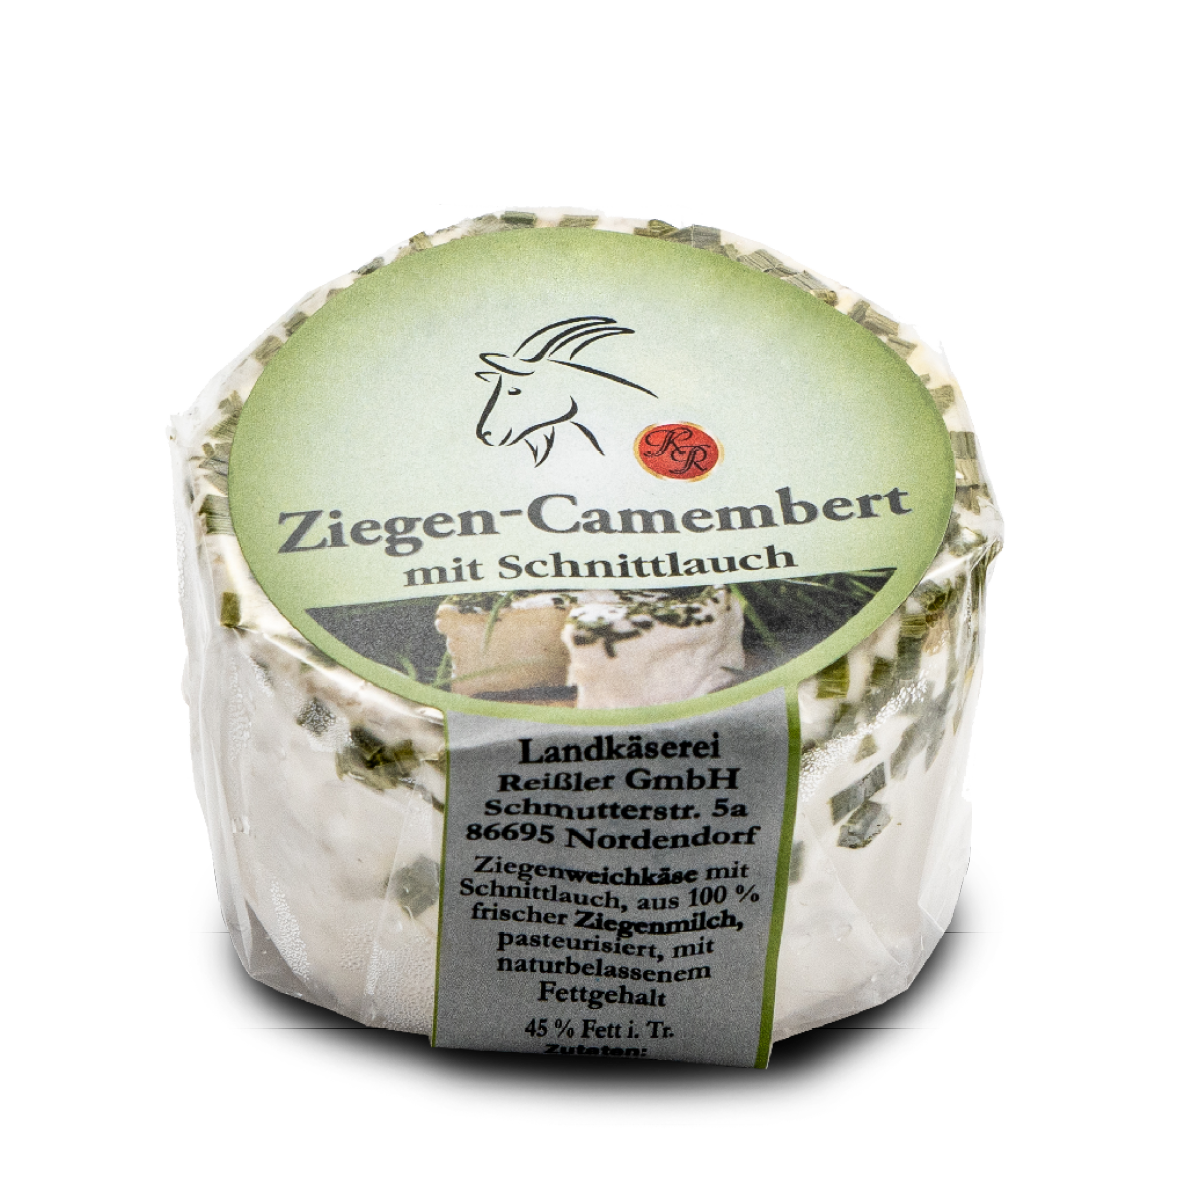 Ziegen-Camembert mit Schnittlauchhaube ca. 140g